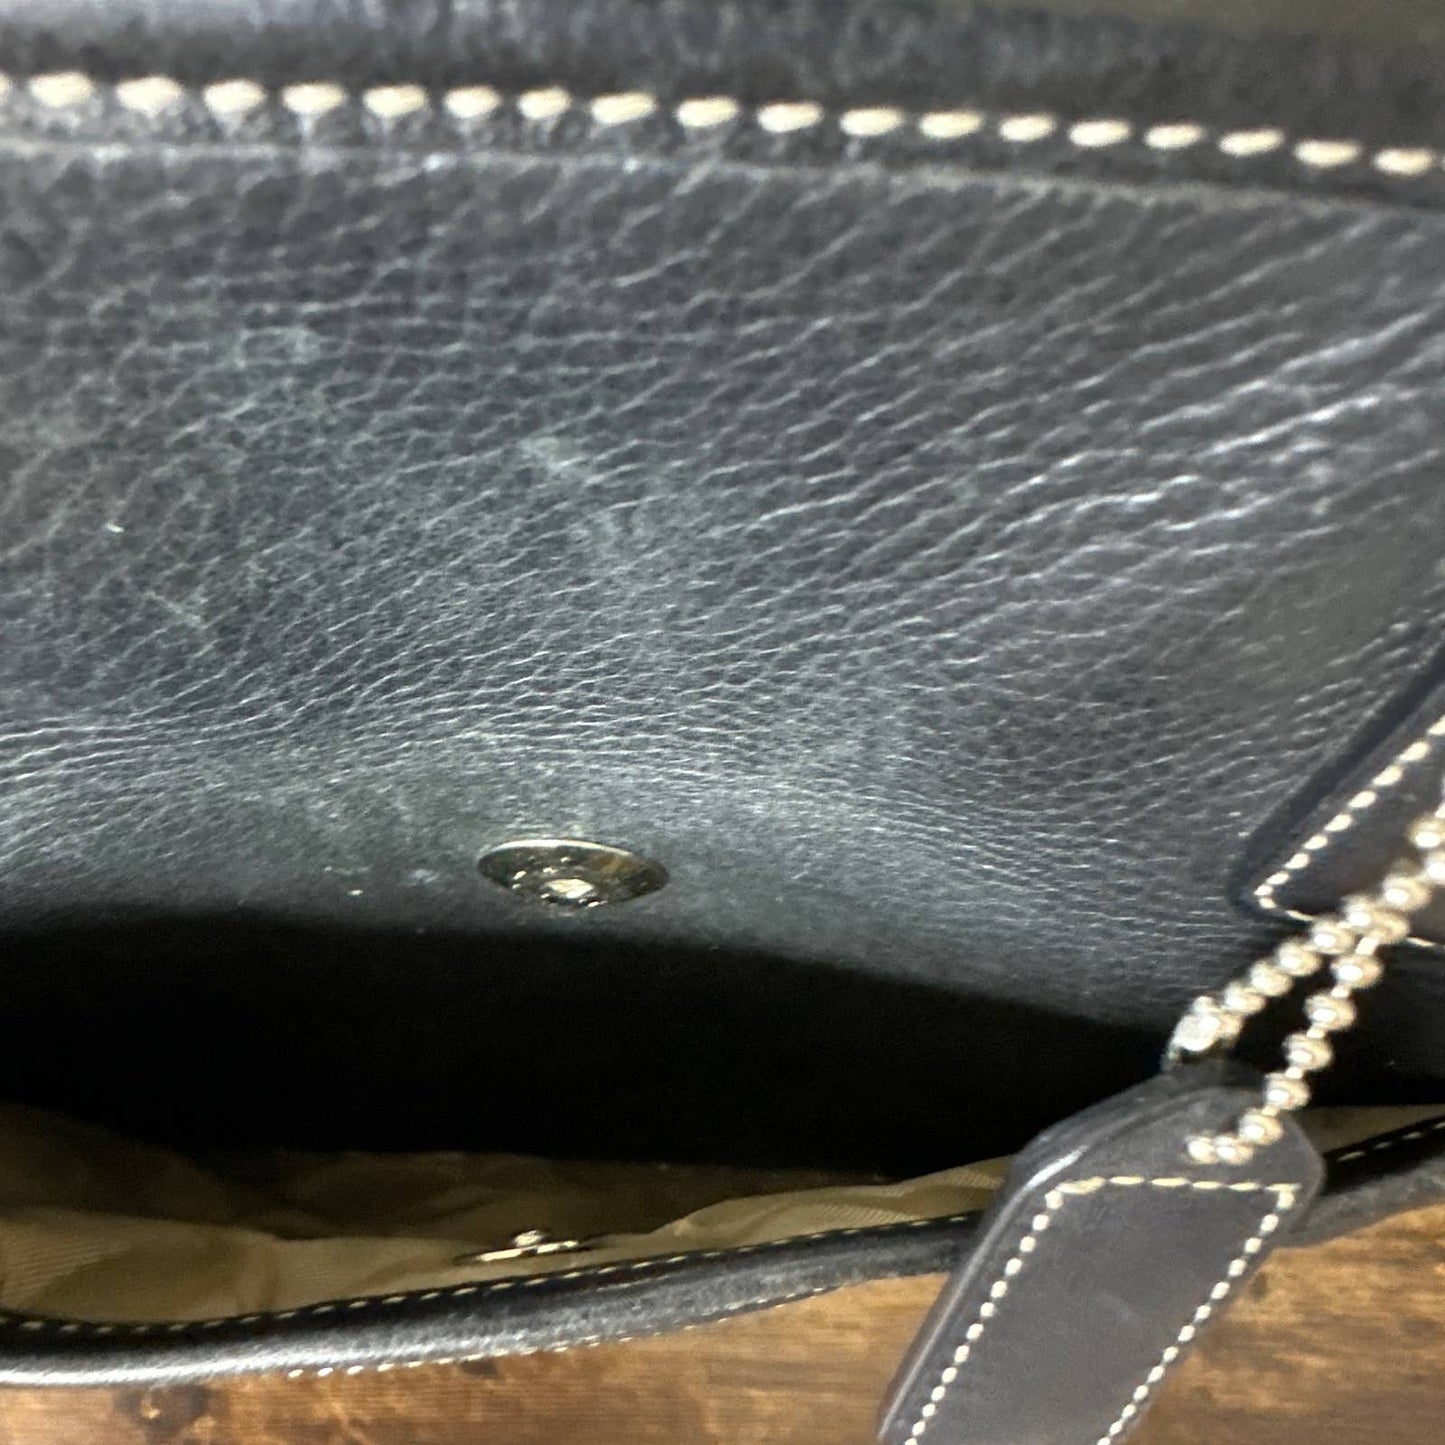 COACH Black Vintage Shoulder Bag